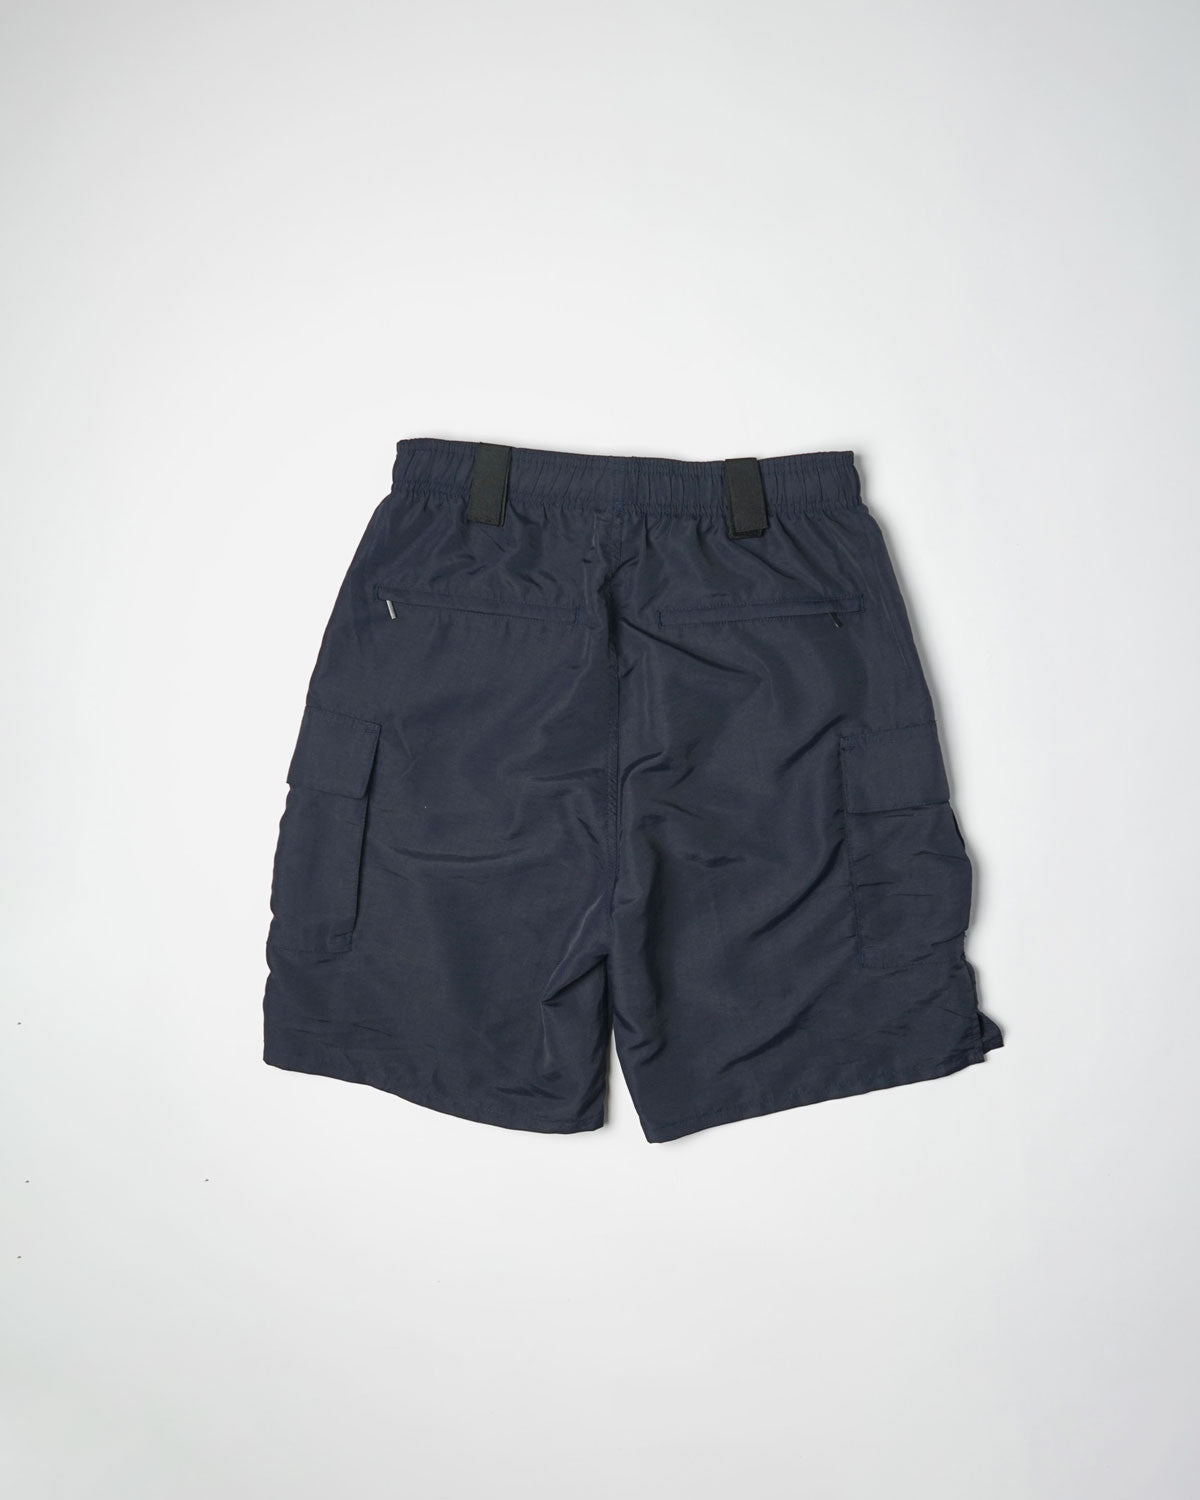 Lawpro Nylon Utility Shorts / Navy